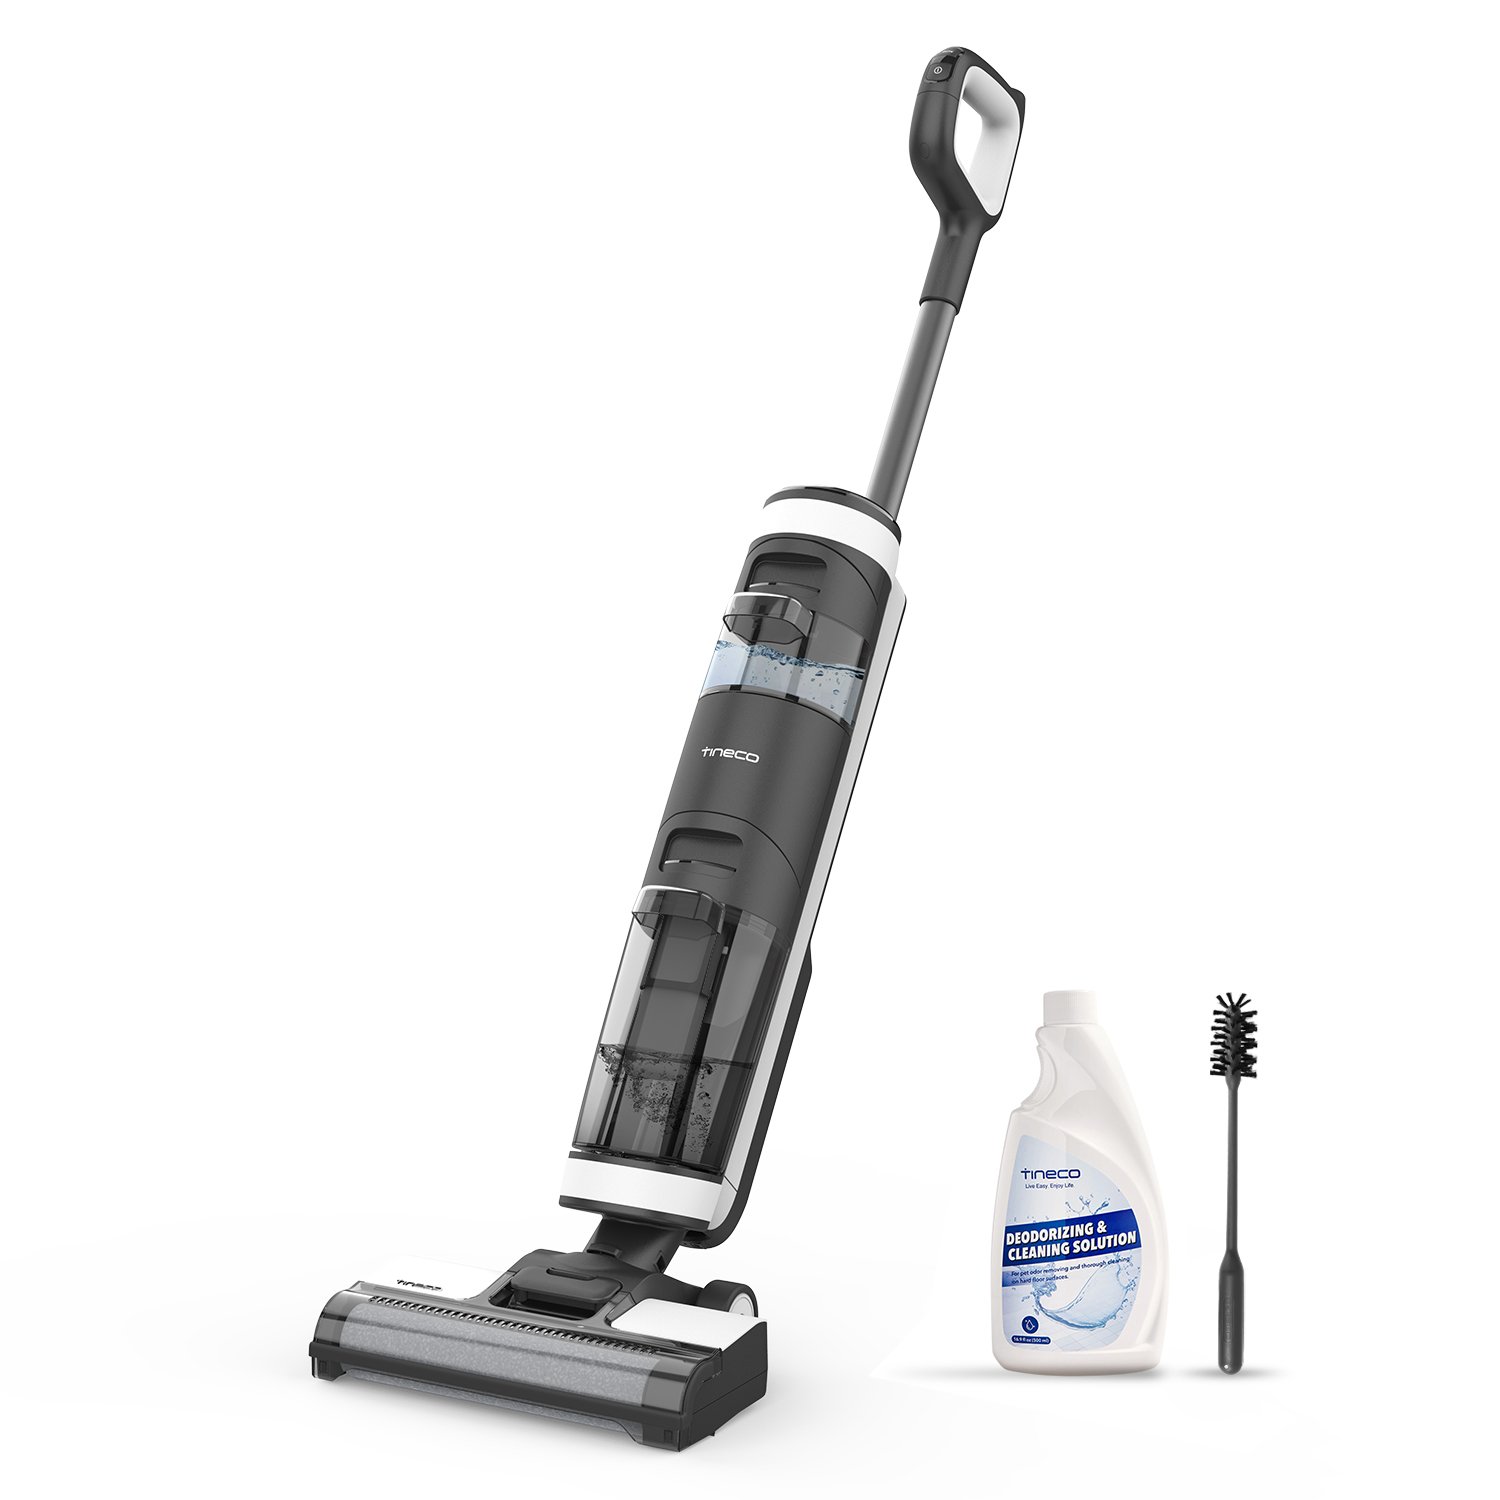 Tineco FLOOR ONE S3 Cordless Smart Wet/Dry Vacuum Cleaner $280